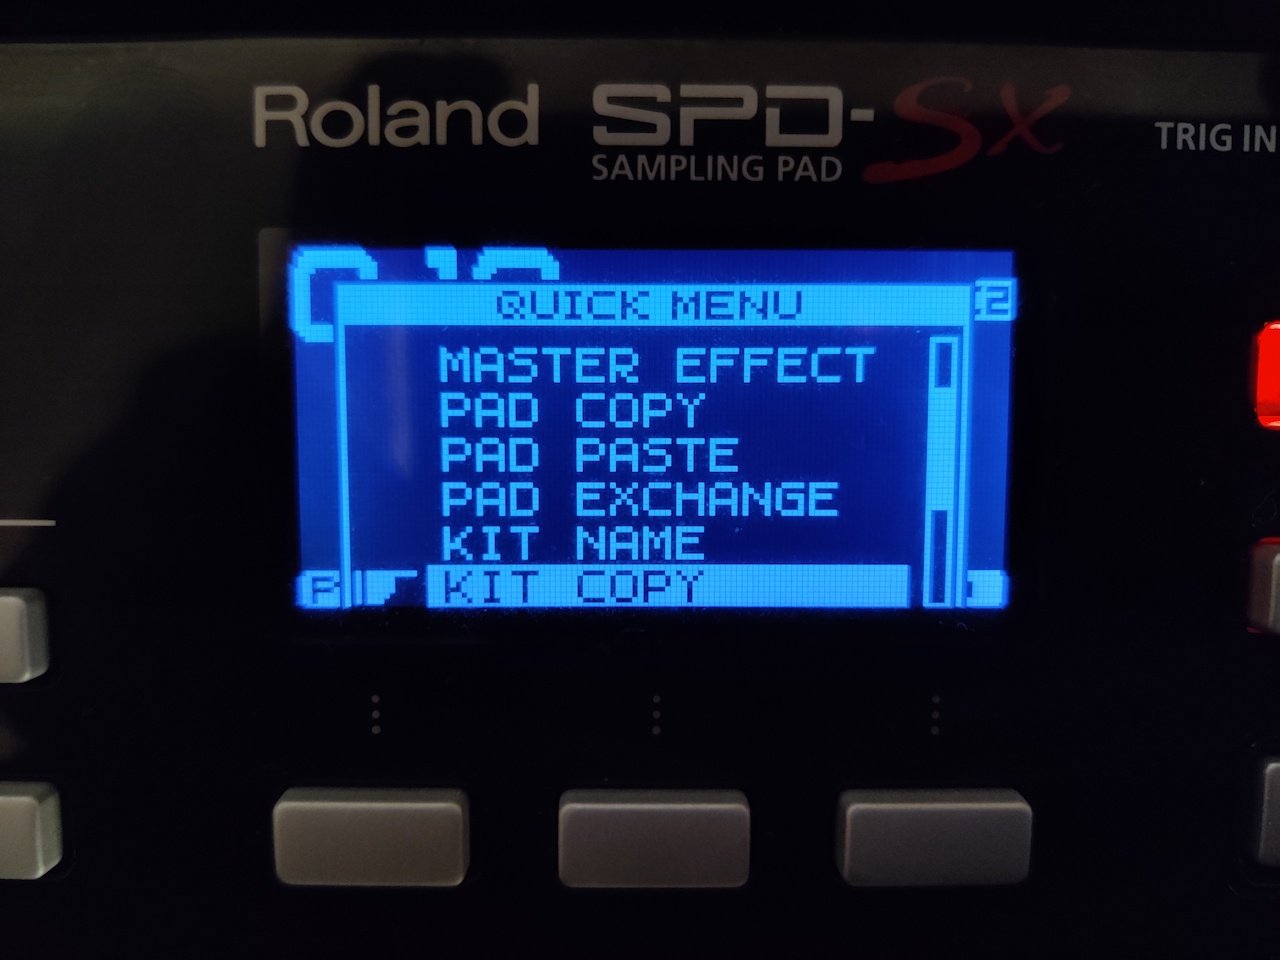 Roland spd-sx downloads